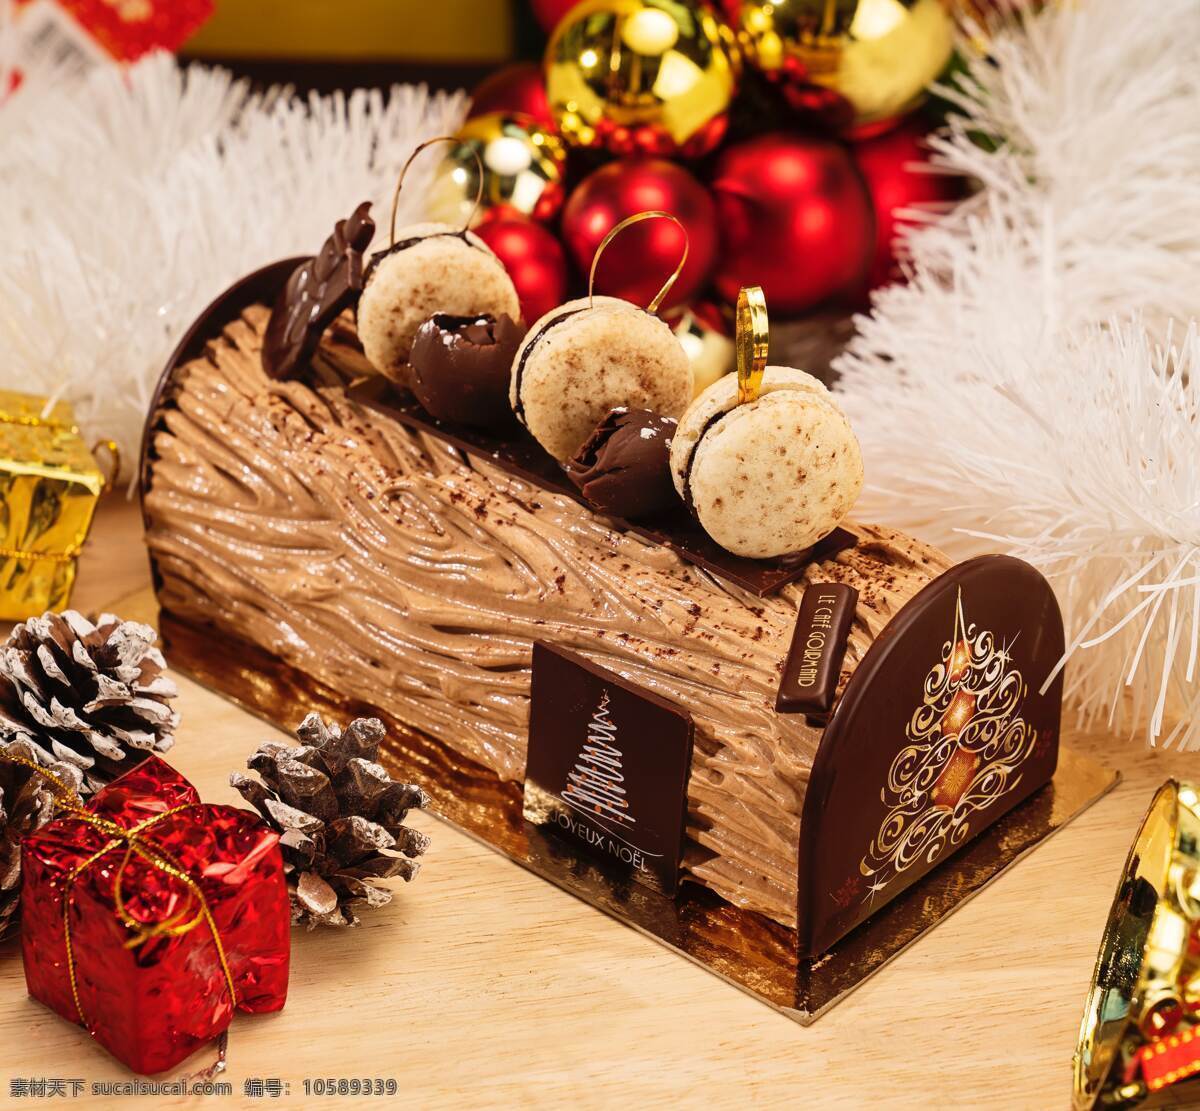 巧克力蛋糕 巧克力 手工巧克力 可可 巧克力粉 甜品 蛋糕 节日 礼品 甜蜜 曲奇 生活百科 生活素材